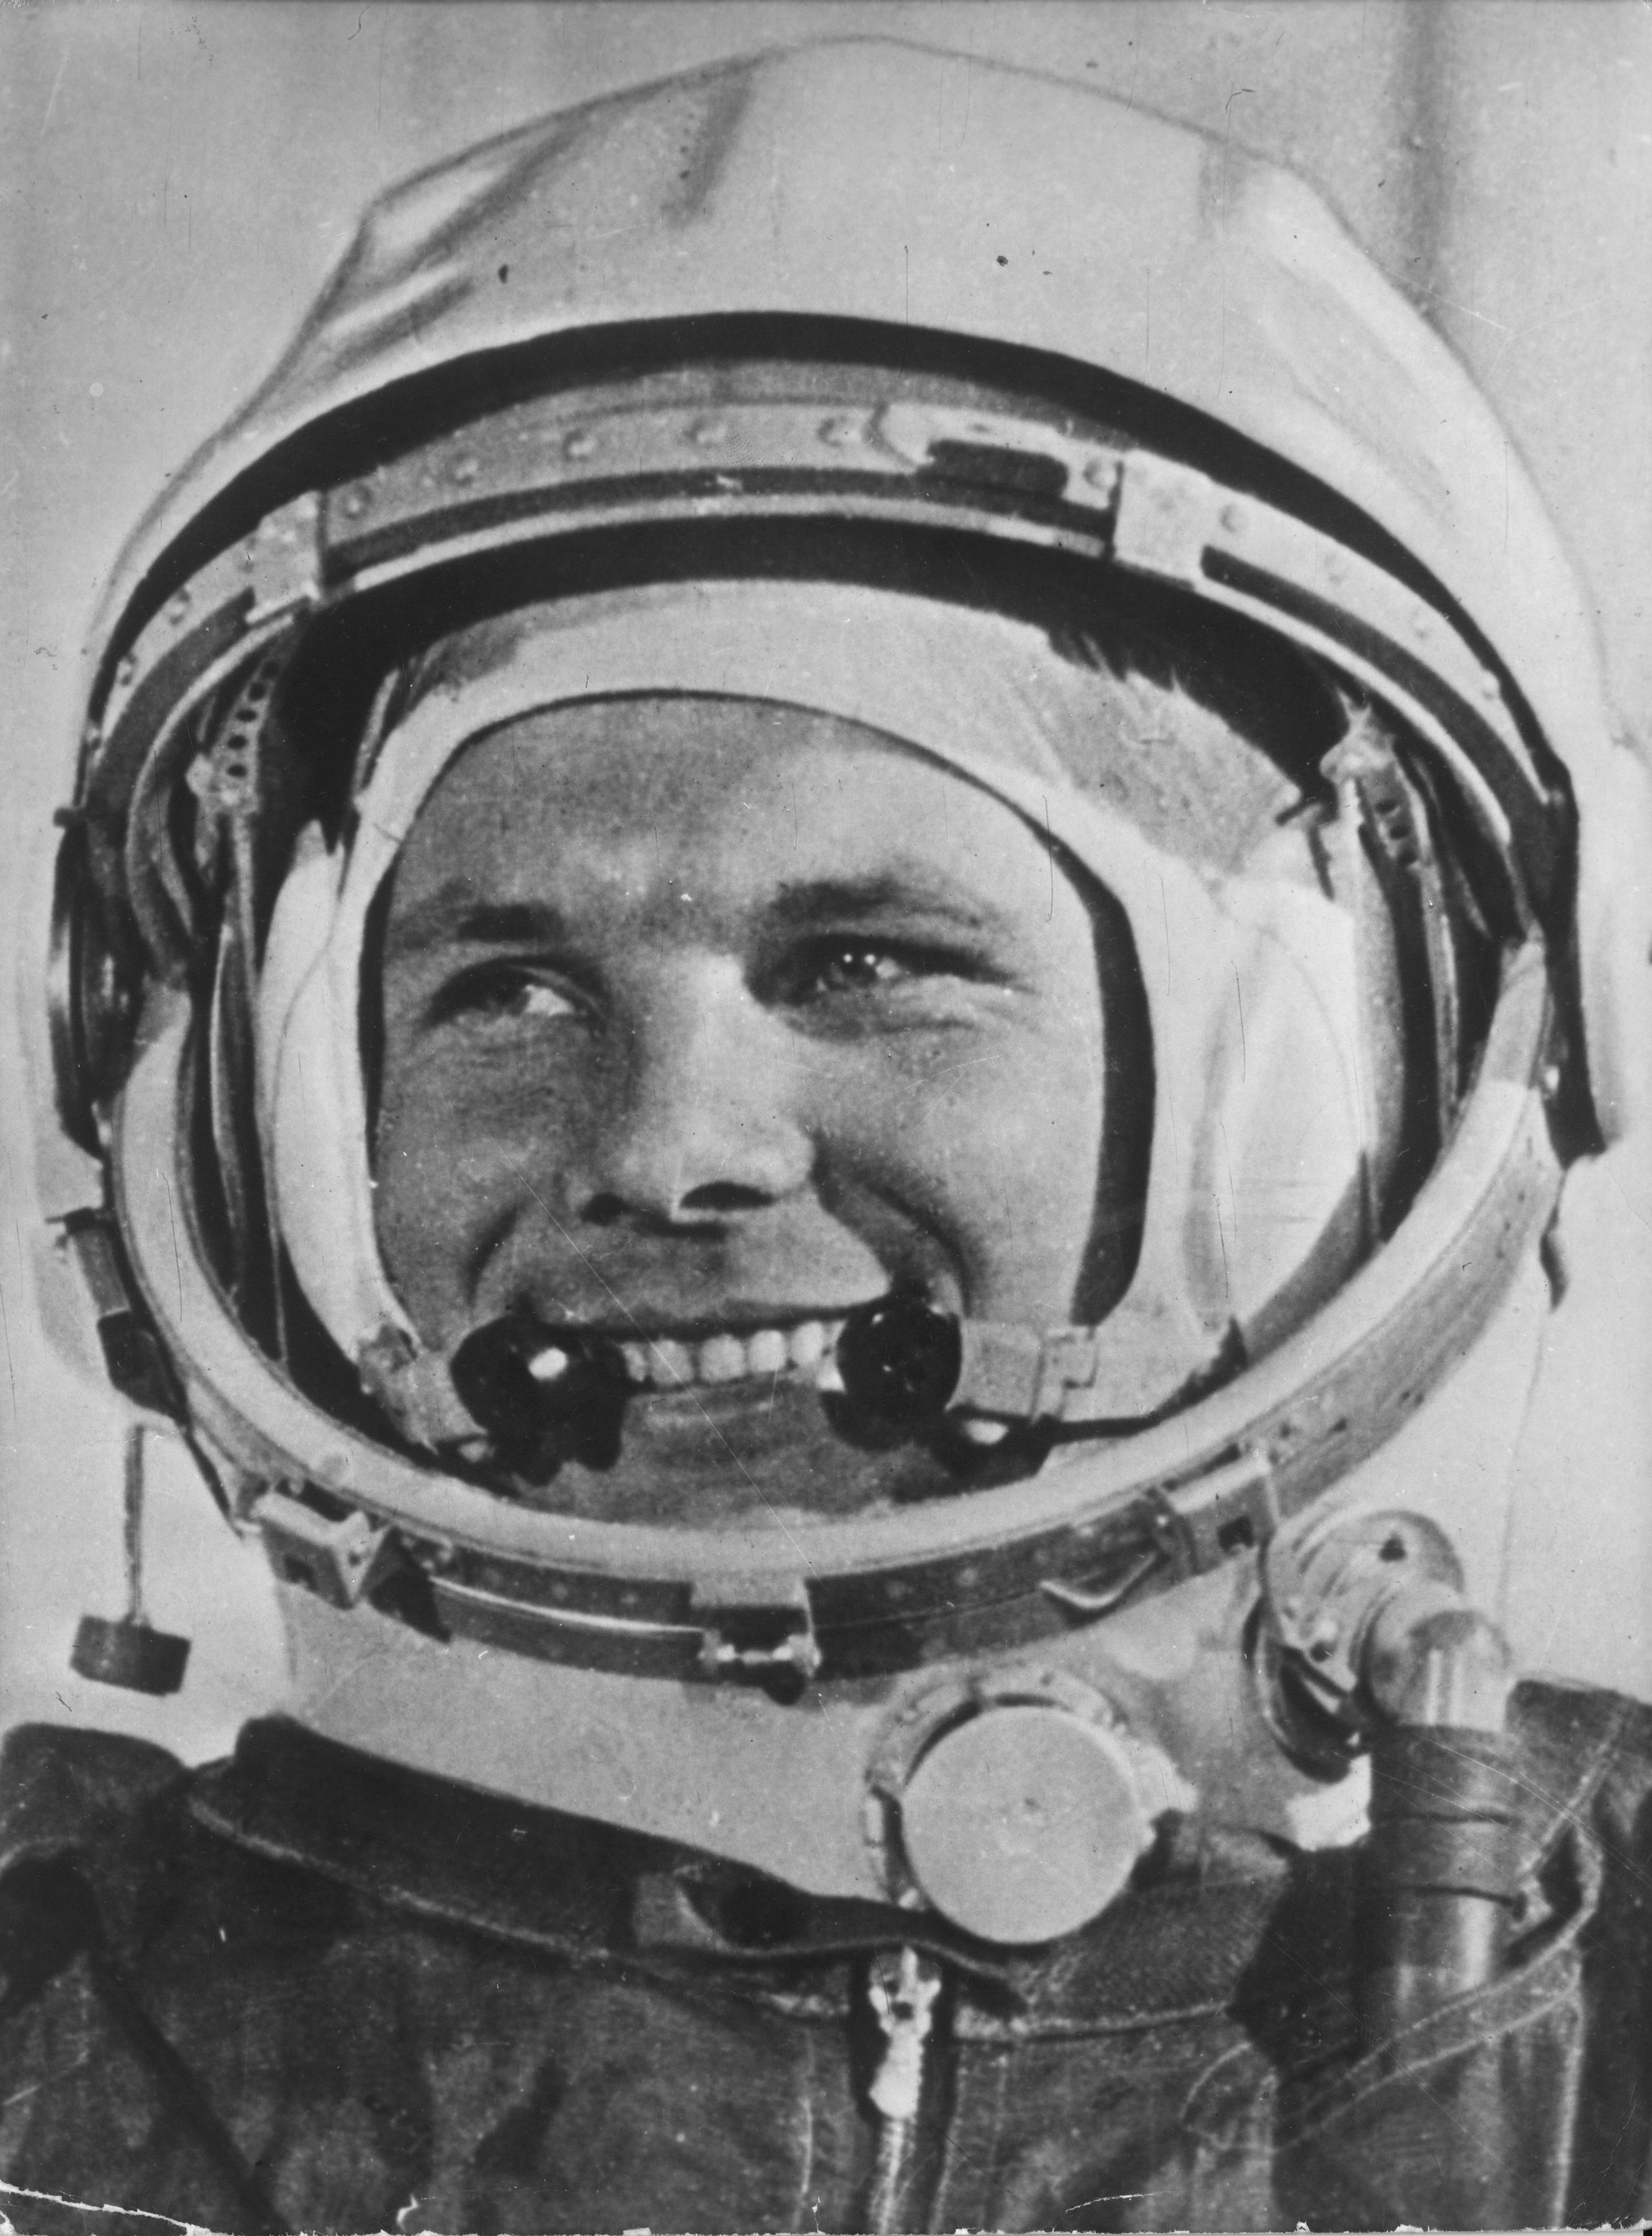 Z kosmodromu Bajkonur dne 12. dubna 1961 odstartoval Vostok 1, na jehož palubě byl Jurij Gagarin (1934 – 1968).